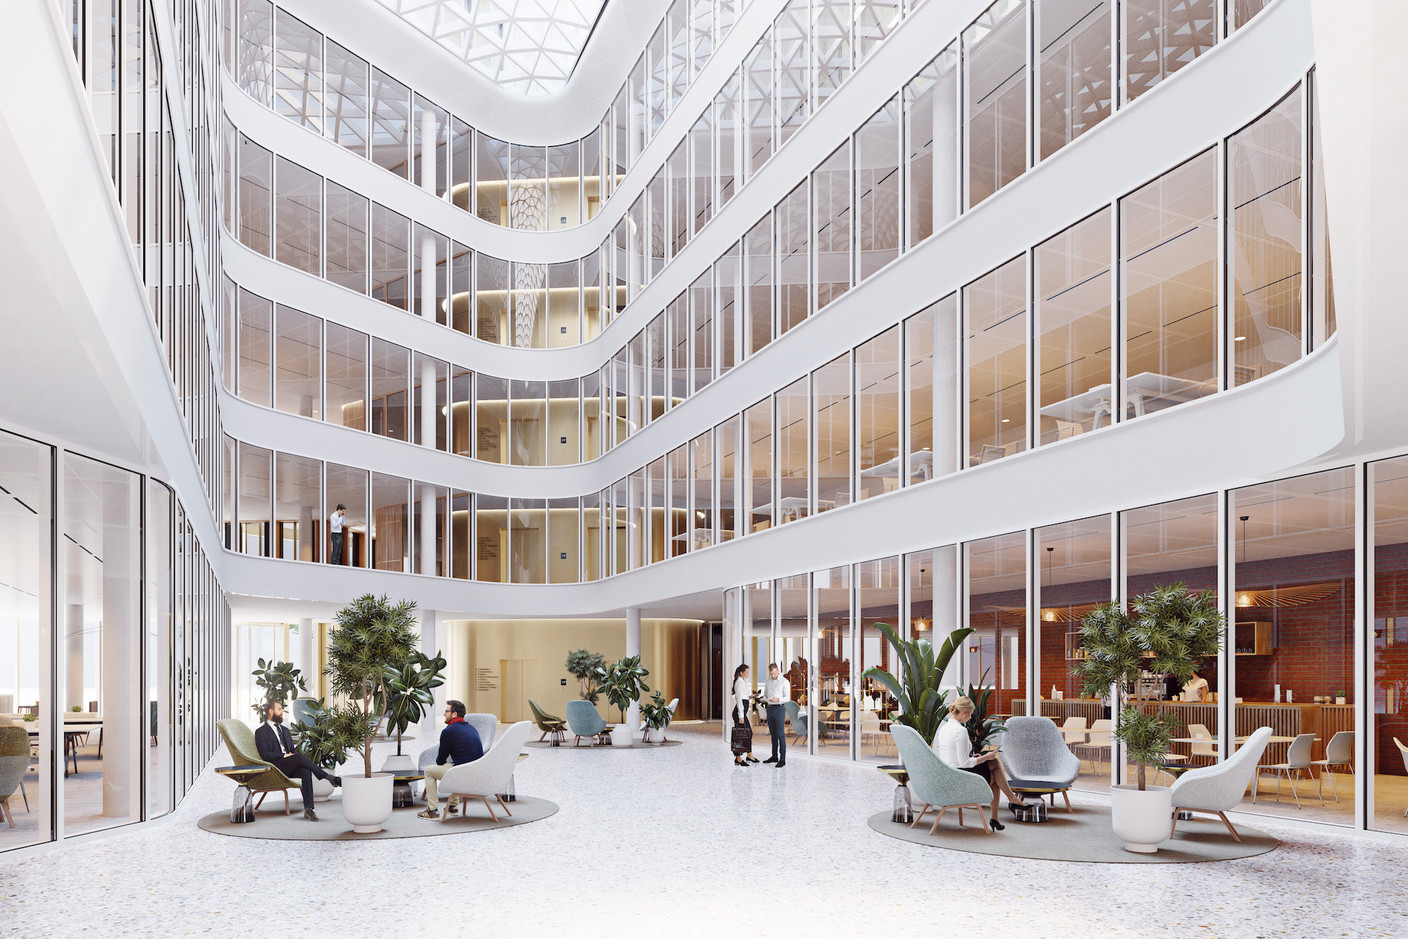 À l’intérieur de l’immeuble, un vaste atrium sera couvert par une verrière. (Illustrations : IKO Real Estate-Thomas & Piron)